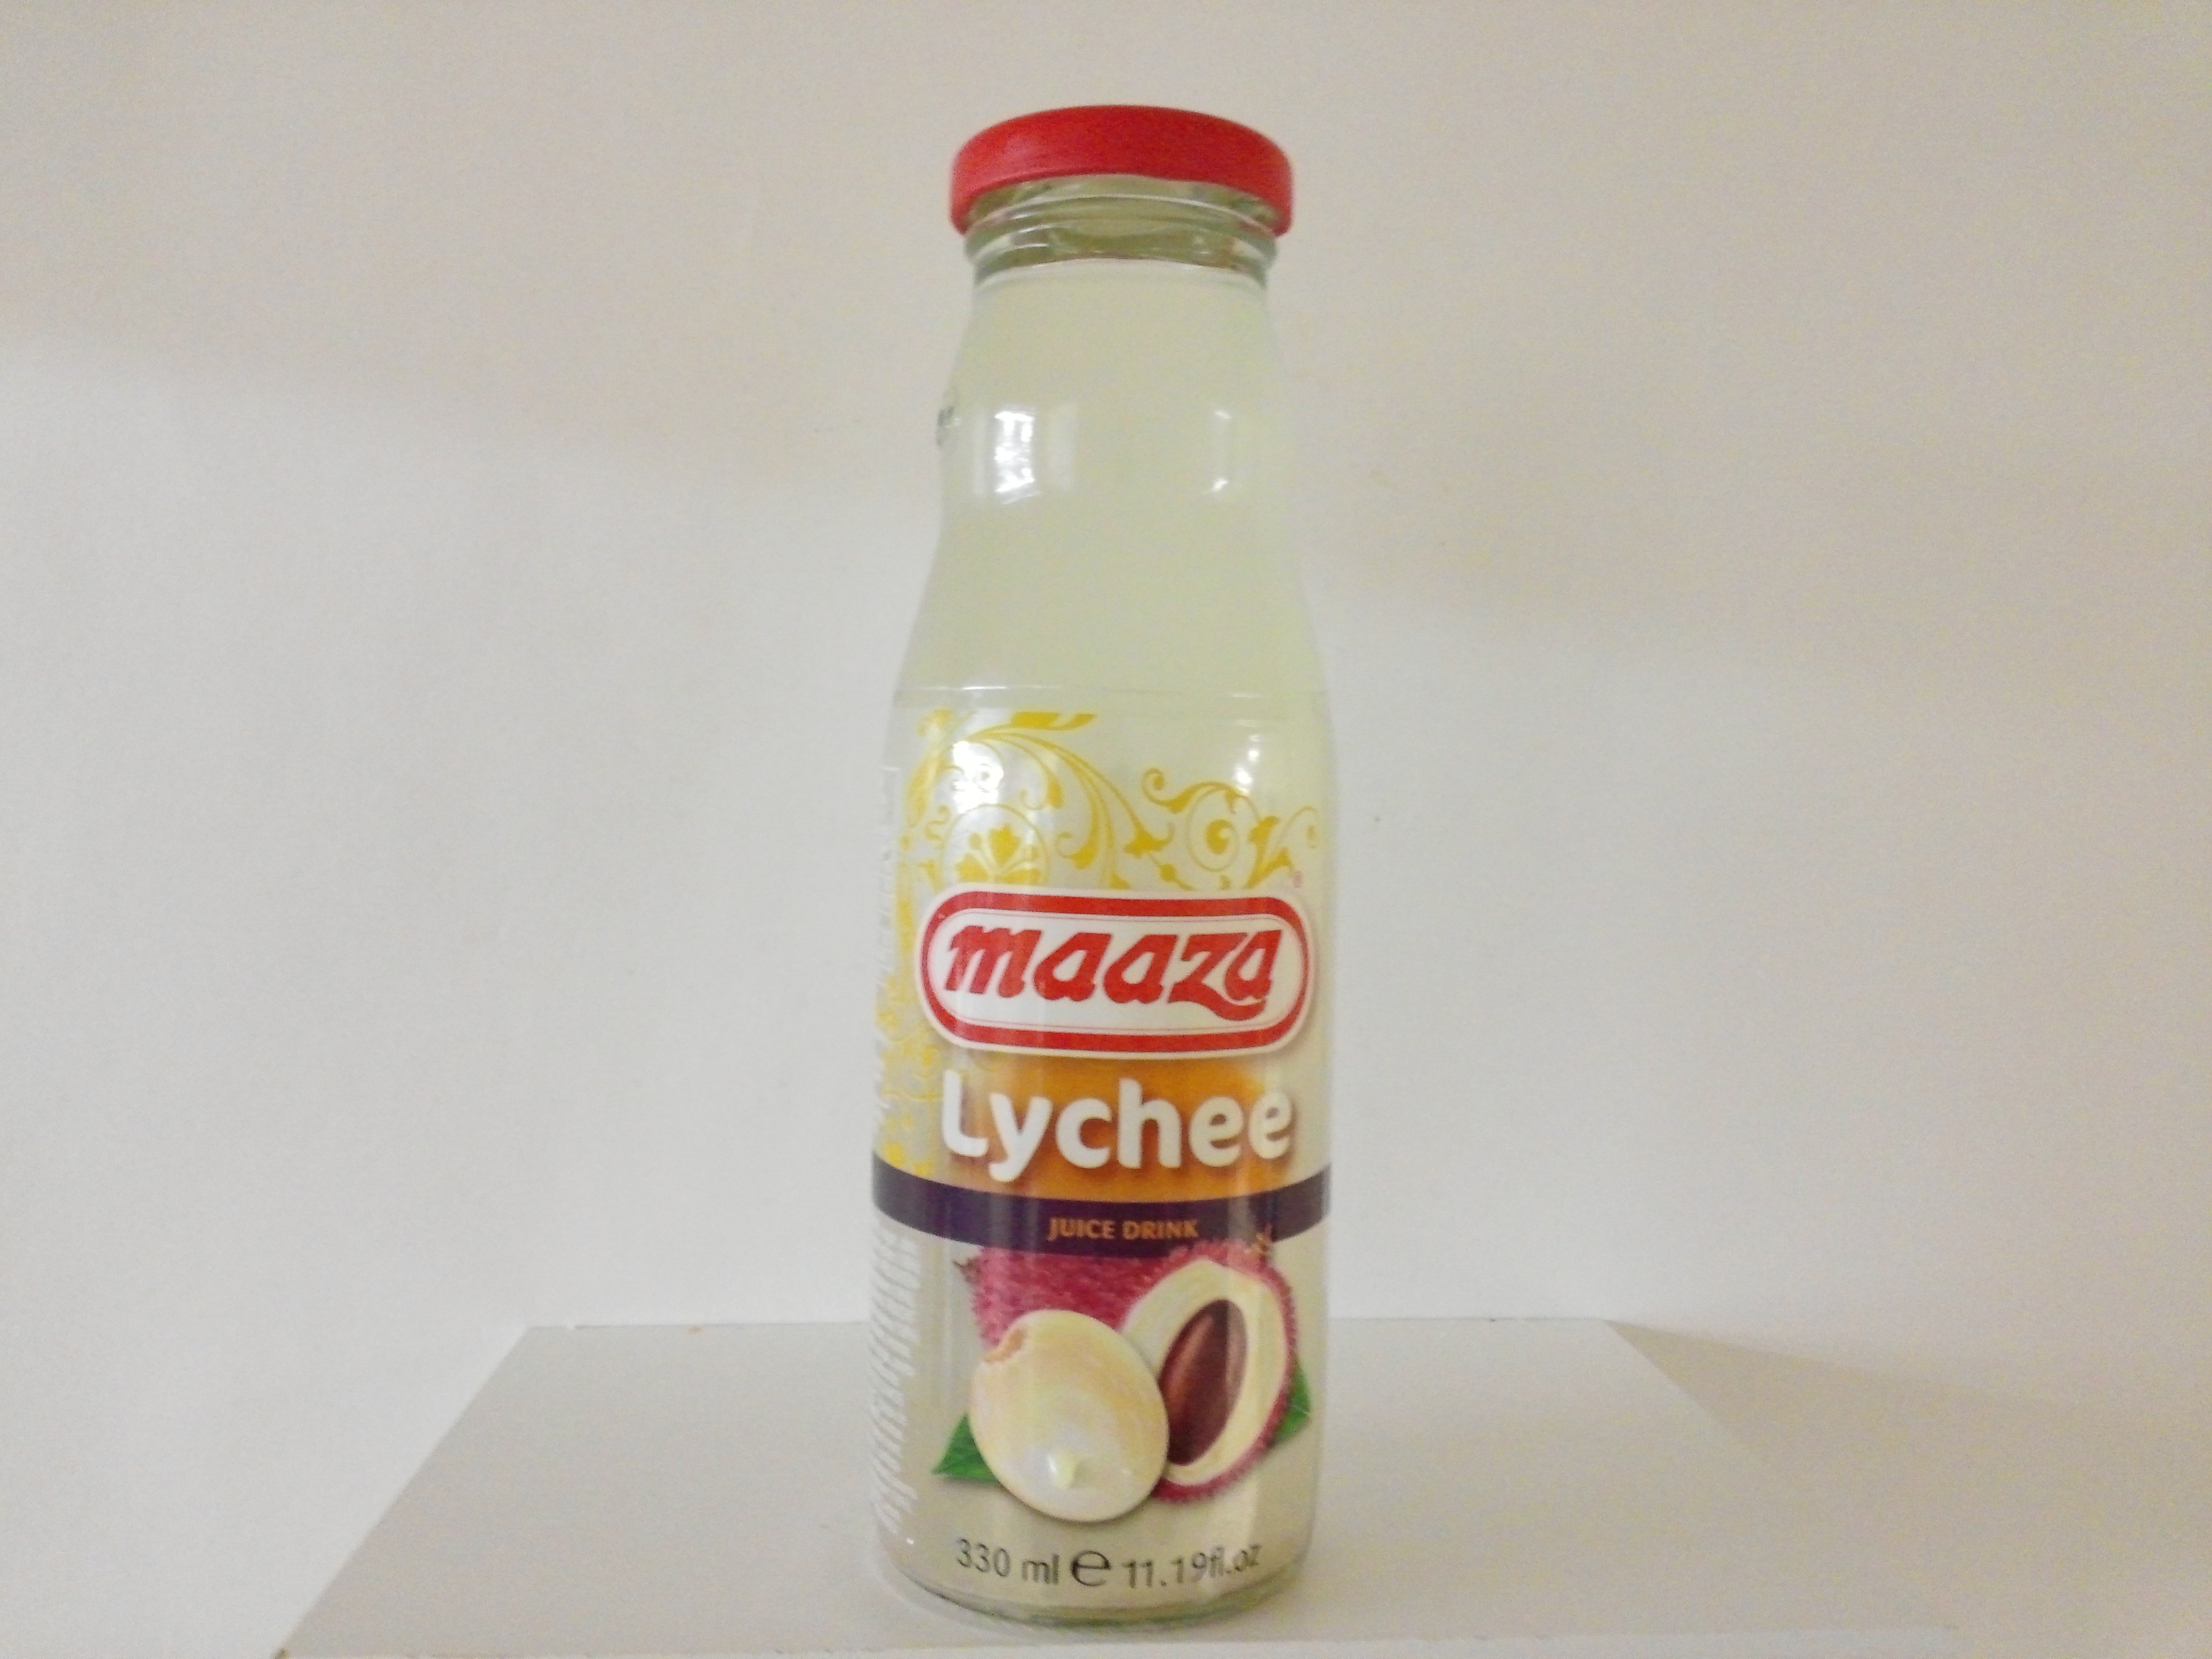 Maaza Lychee Juice Drink 11.19 oz  